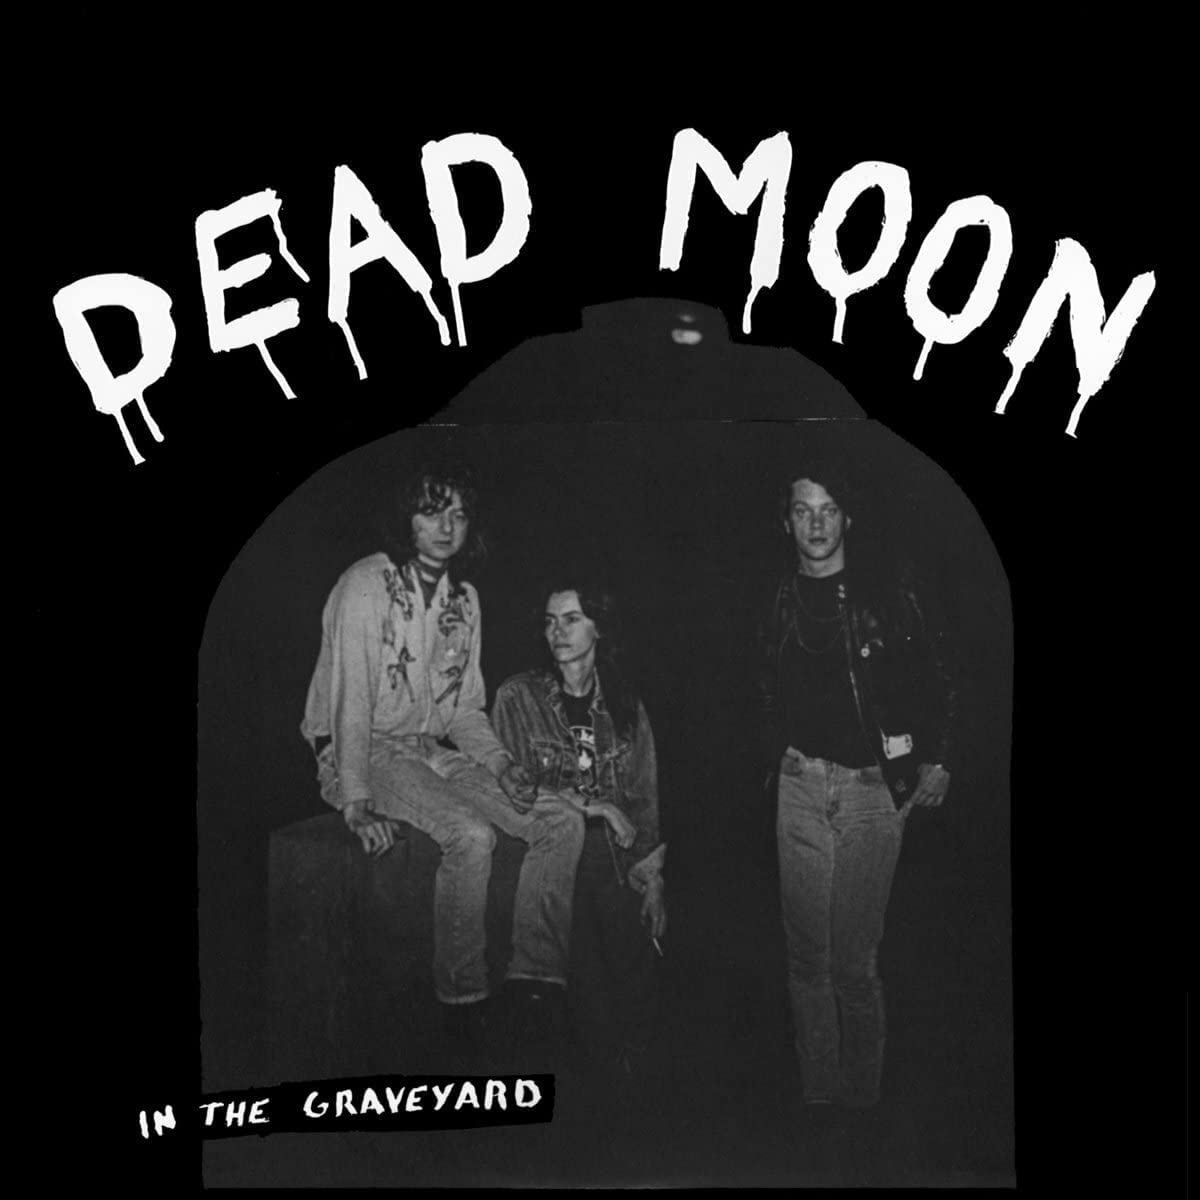 Dead Moon – In The Graveyard